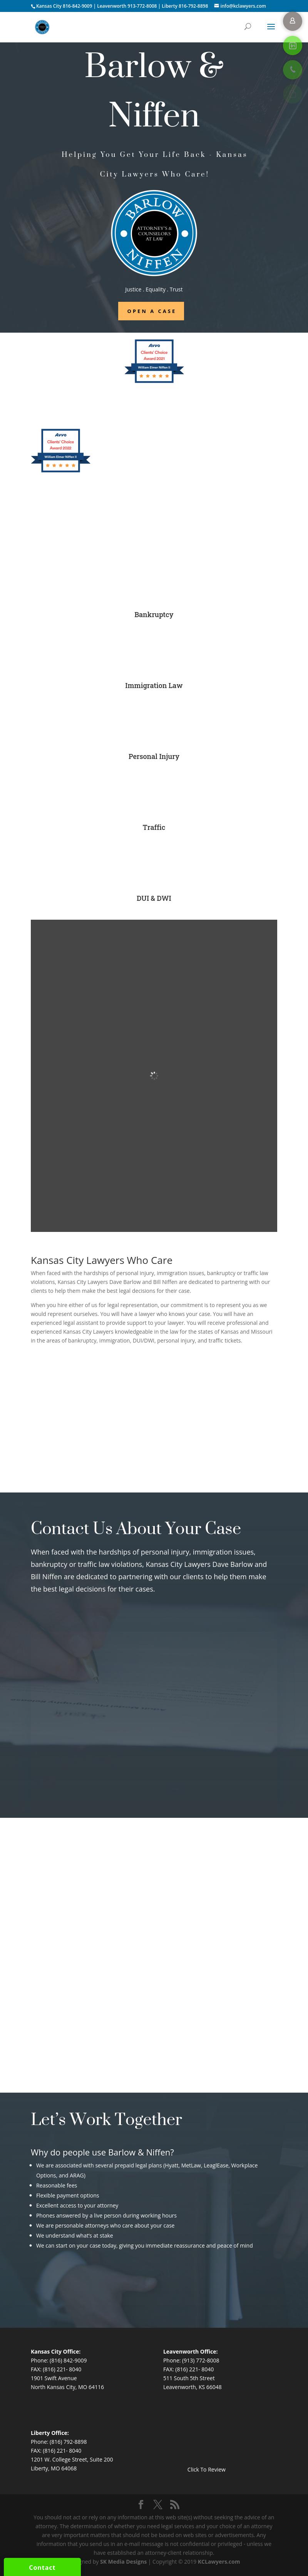 Barlow & Niffen PC - Kansas City MO Lawyers